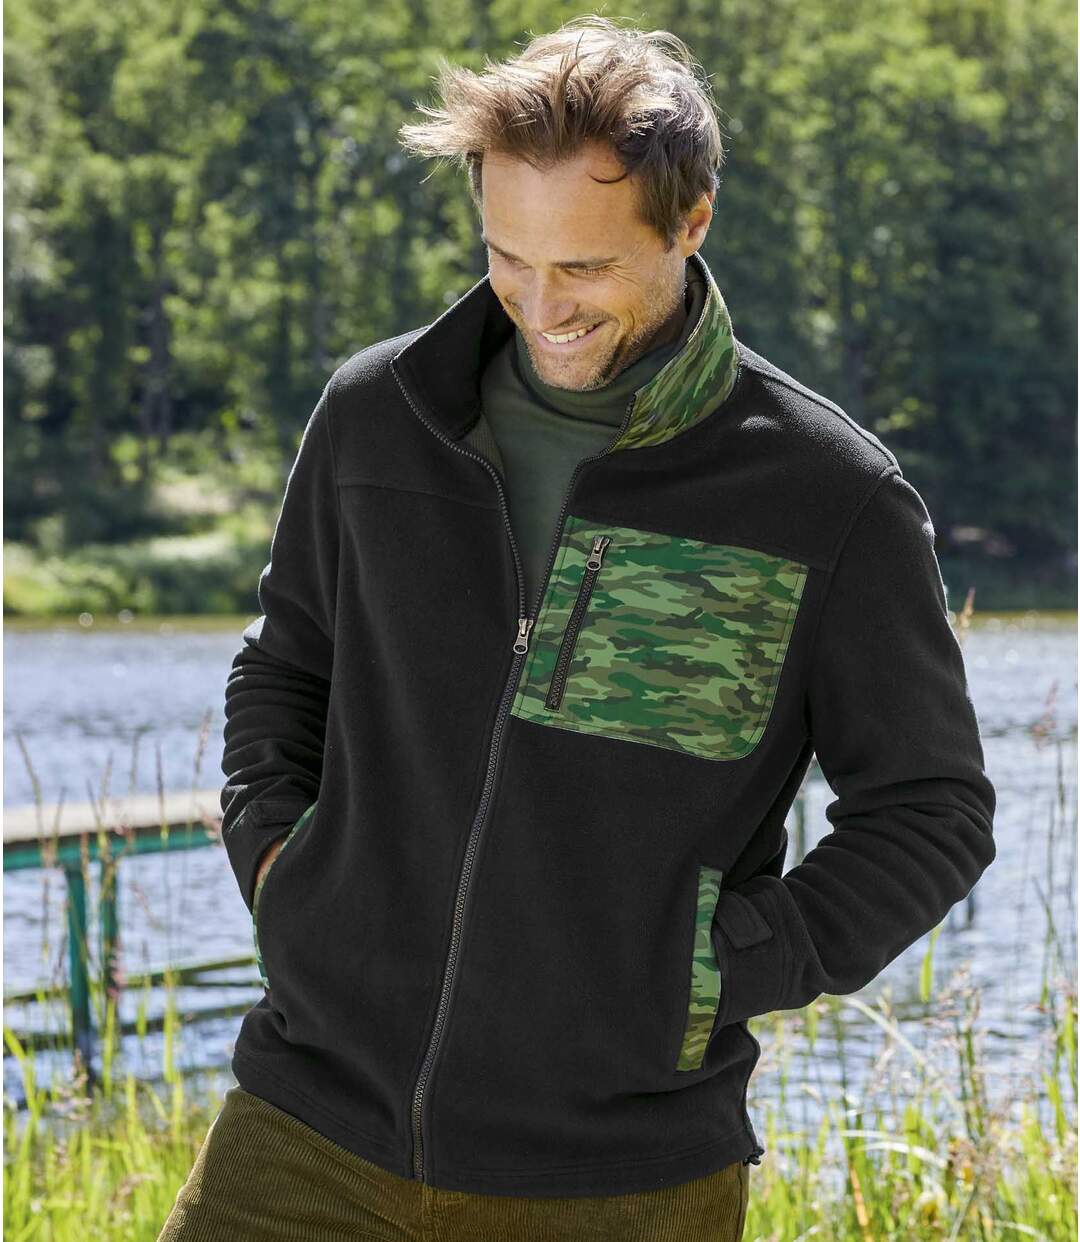 Men's Black Camouflage Fleece Jacket - Full Zip Atlas For Men